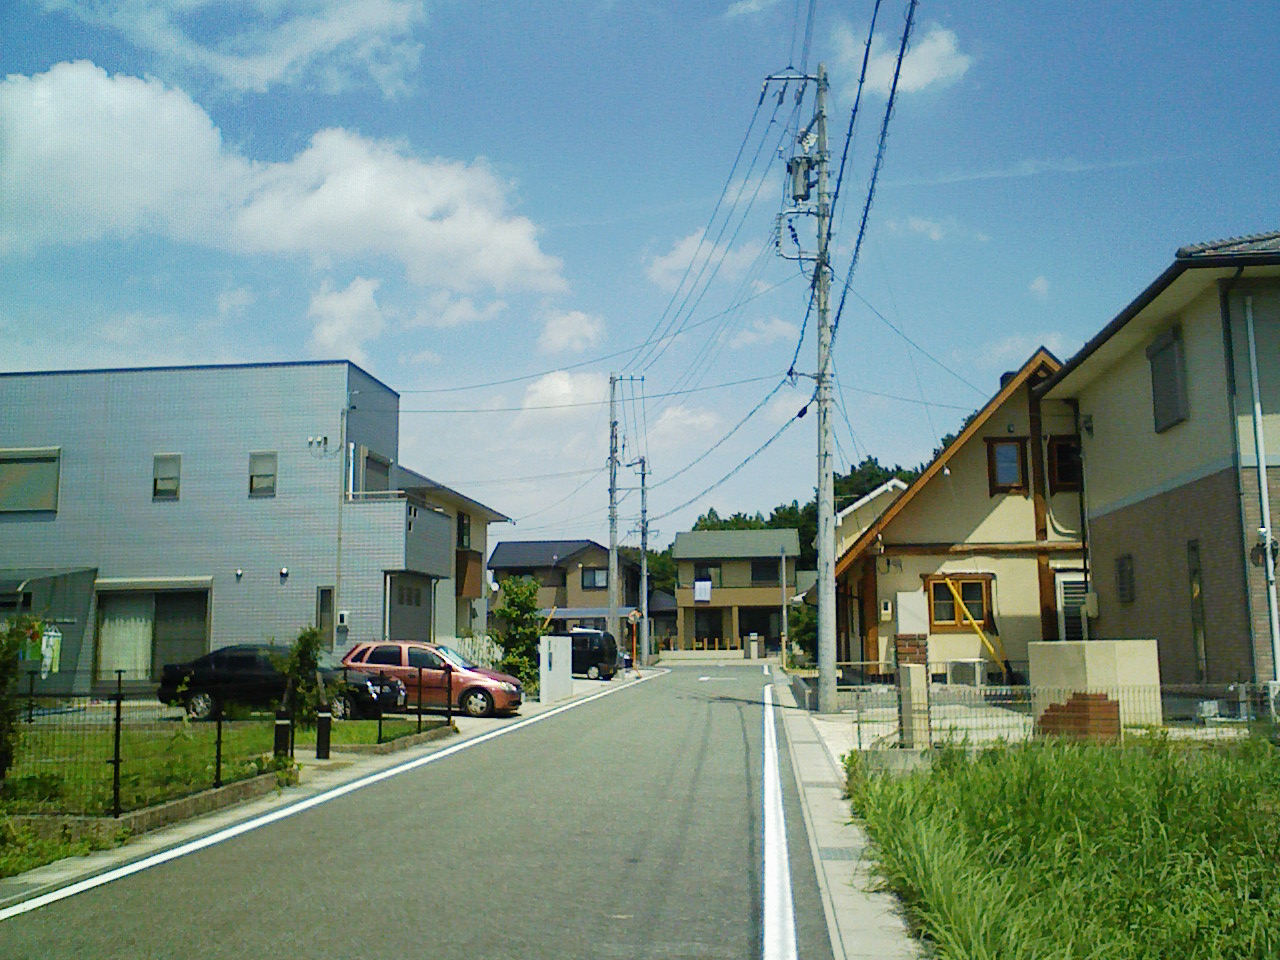 ダイレクトタウン明和町上野、建築条件なし宅地分譲残一区画。_a0138219_7103895.jpg